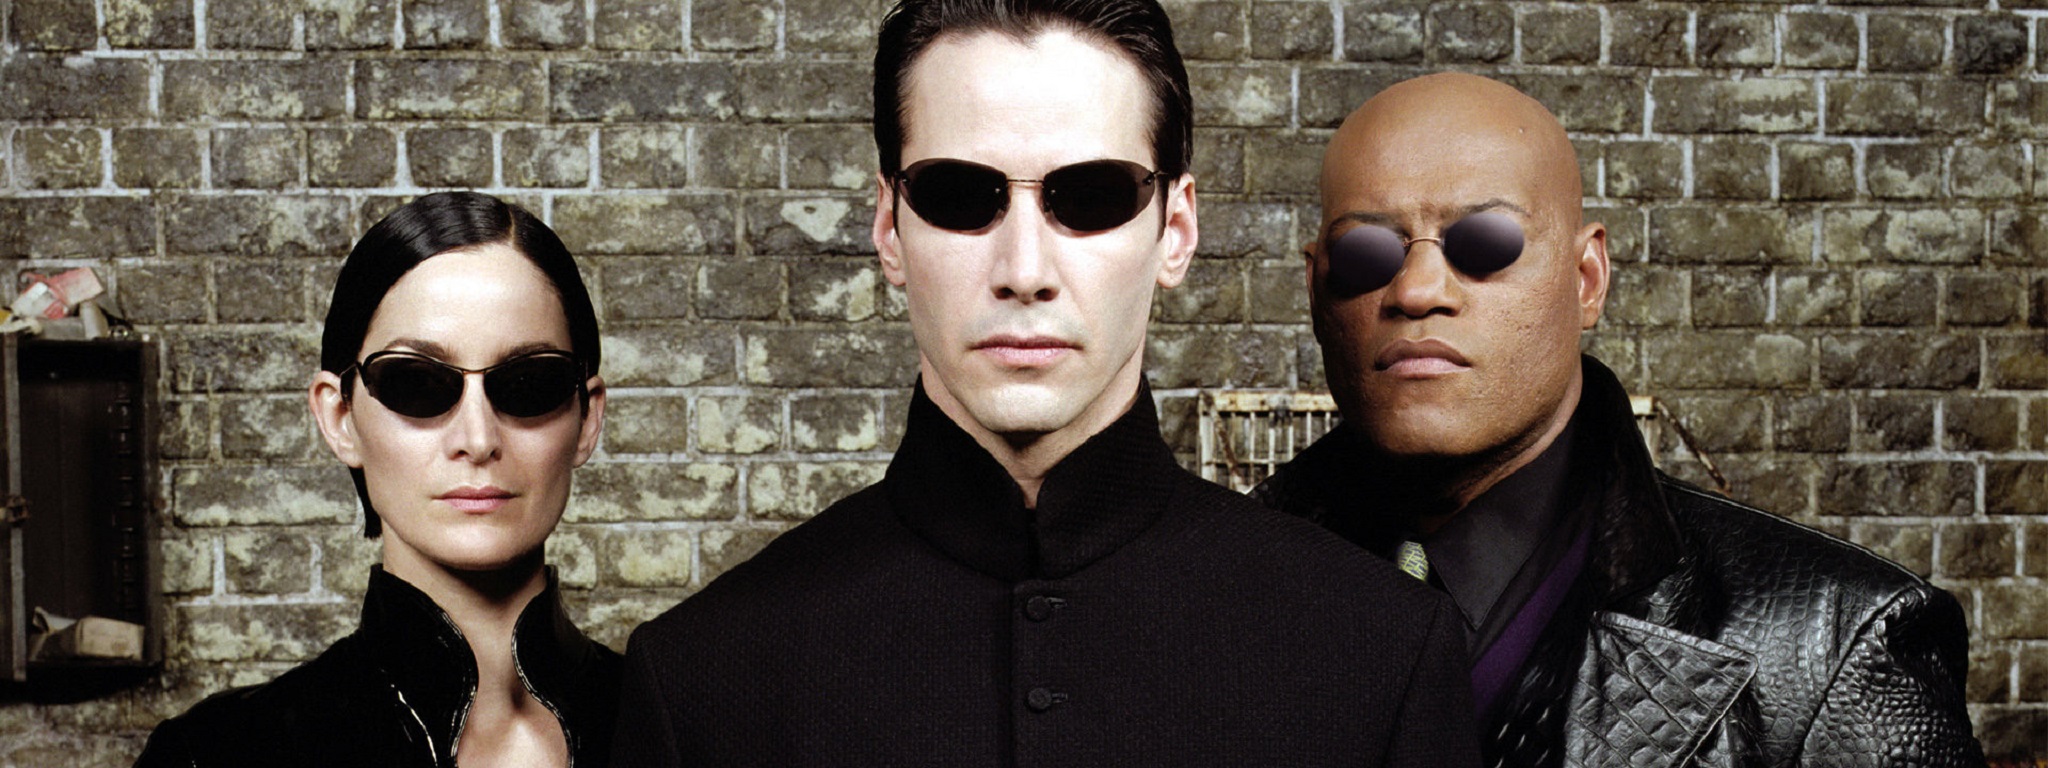 [Tin đồn] WB sẽ làm lại phim The Matrix, Michael B. Jordan đóng vai chính